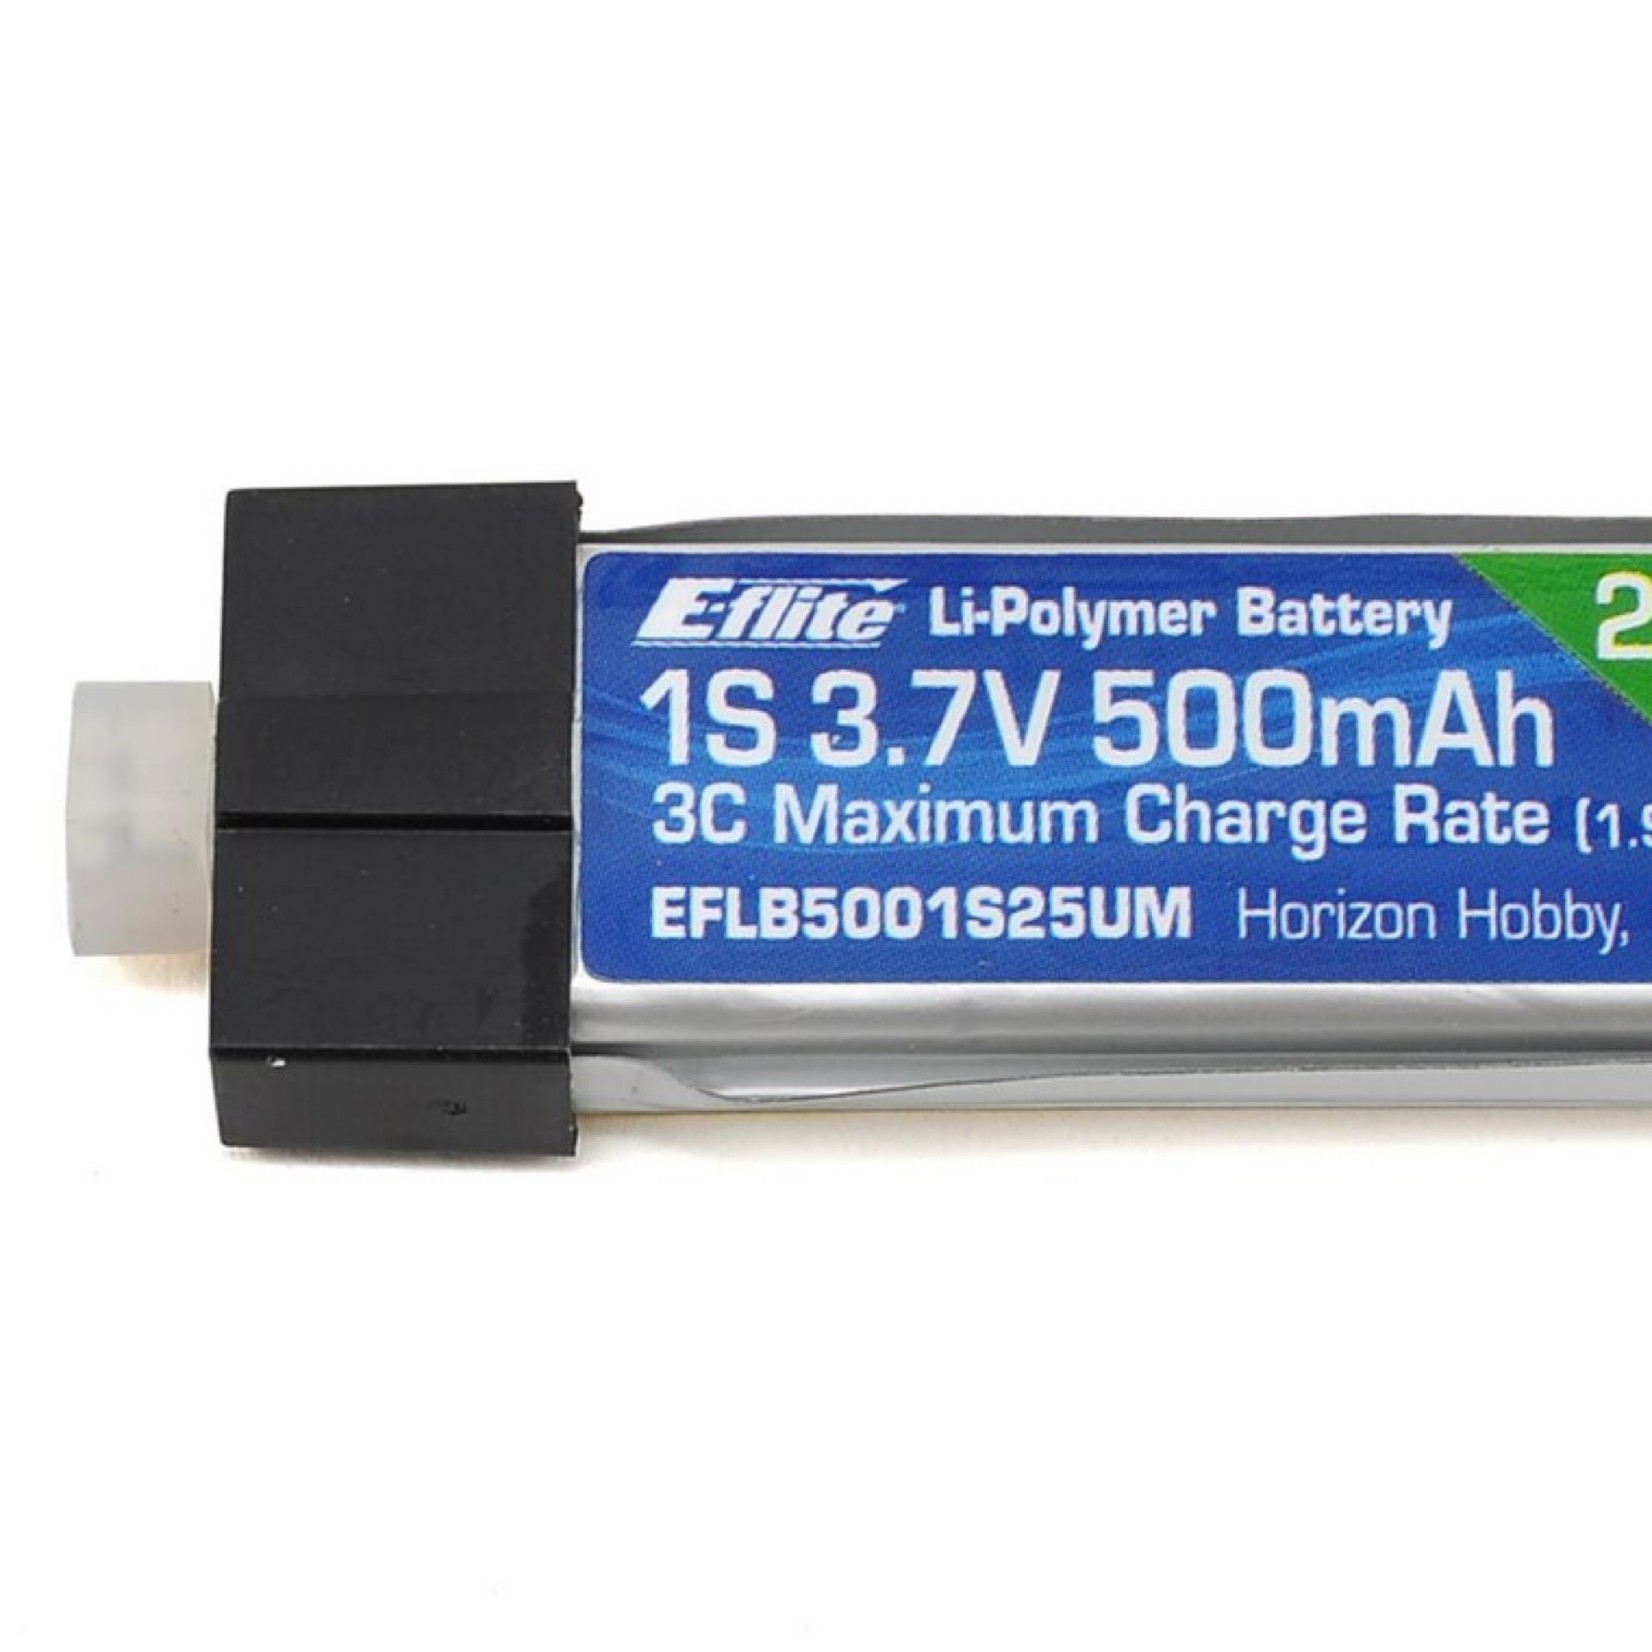 E-flite E-flite 1S 25C High Current LiPo Battery Pack w/UMX Connector (3.7V/500mAh) #EFLB5001S25UM